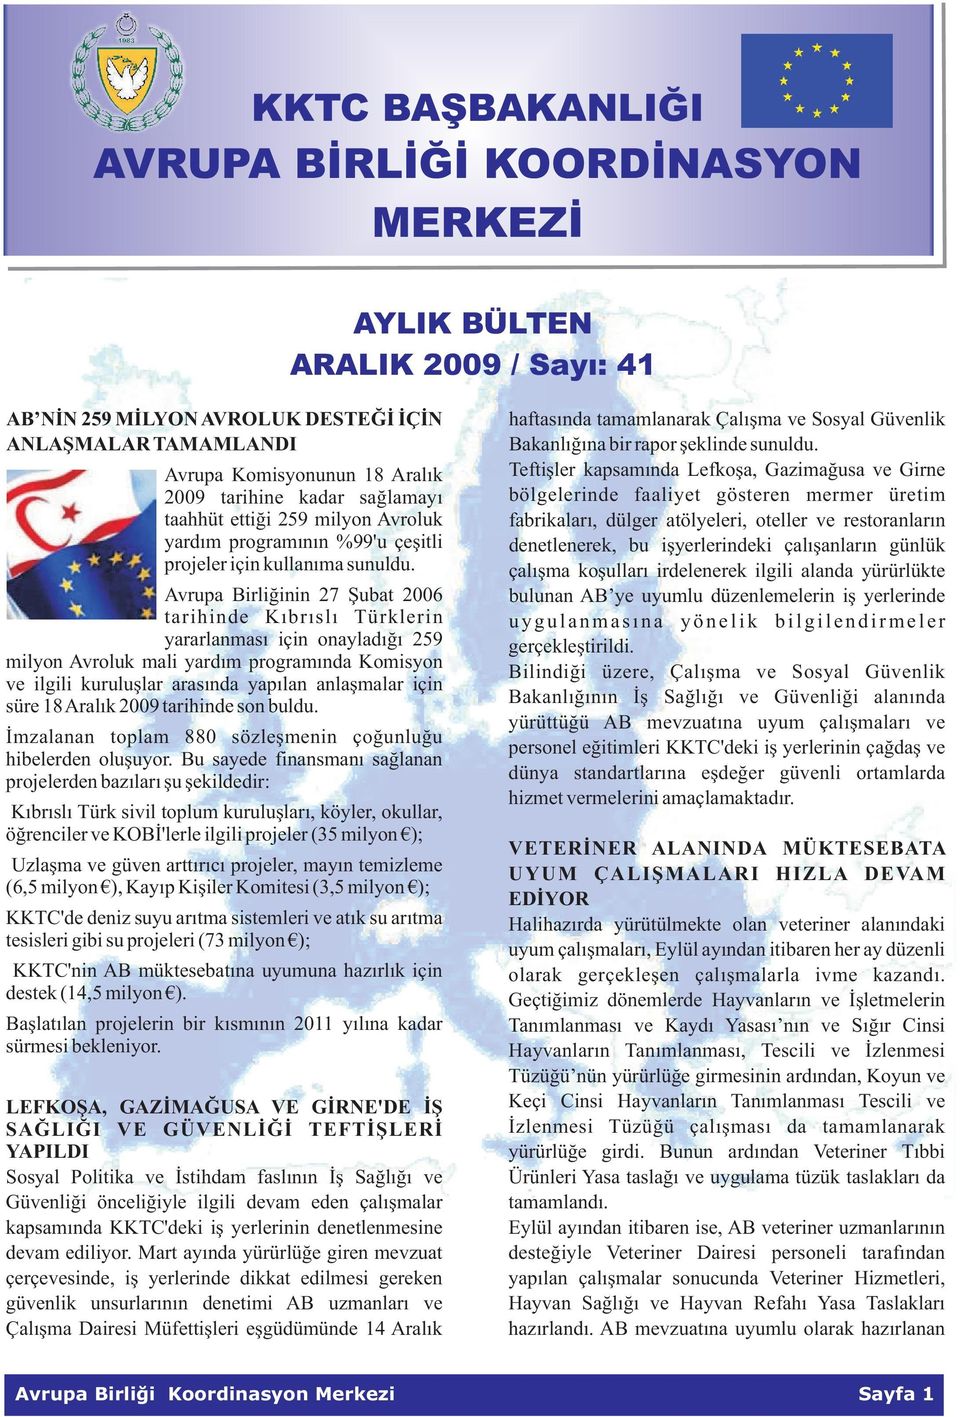 Avrupa Birliðinin 27 Þubat 2006 tarihinde Kýbrýslý Türklerin yararlanmasý için onayladýðý 259 milyon Avroluk mali yardým programýnda Komisyon ve ilgili kuruluþlar arasýnda yapýlan anlaþmalar için